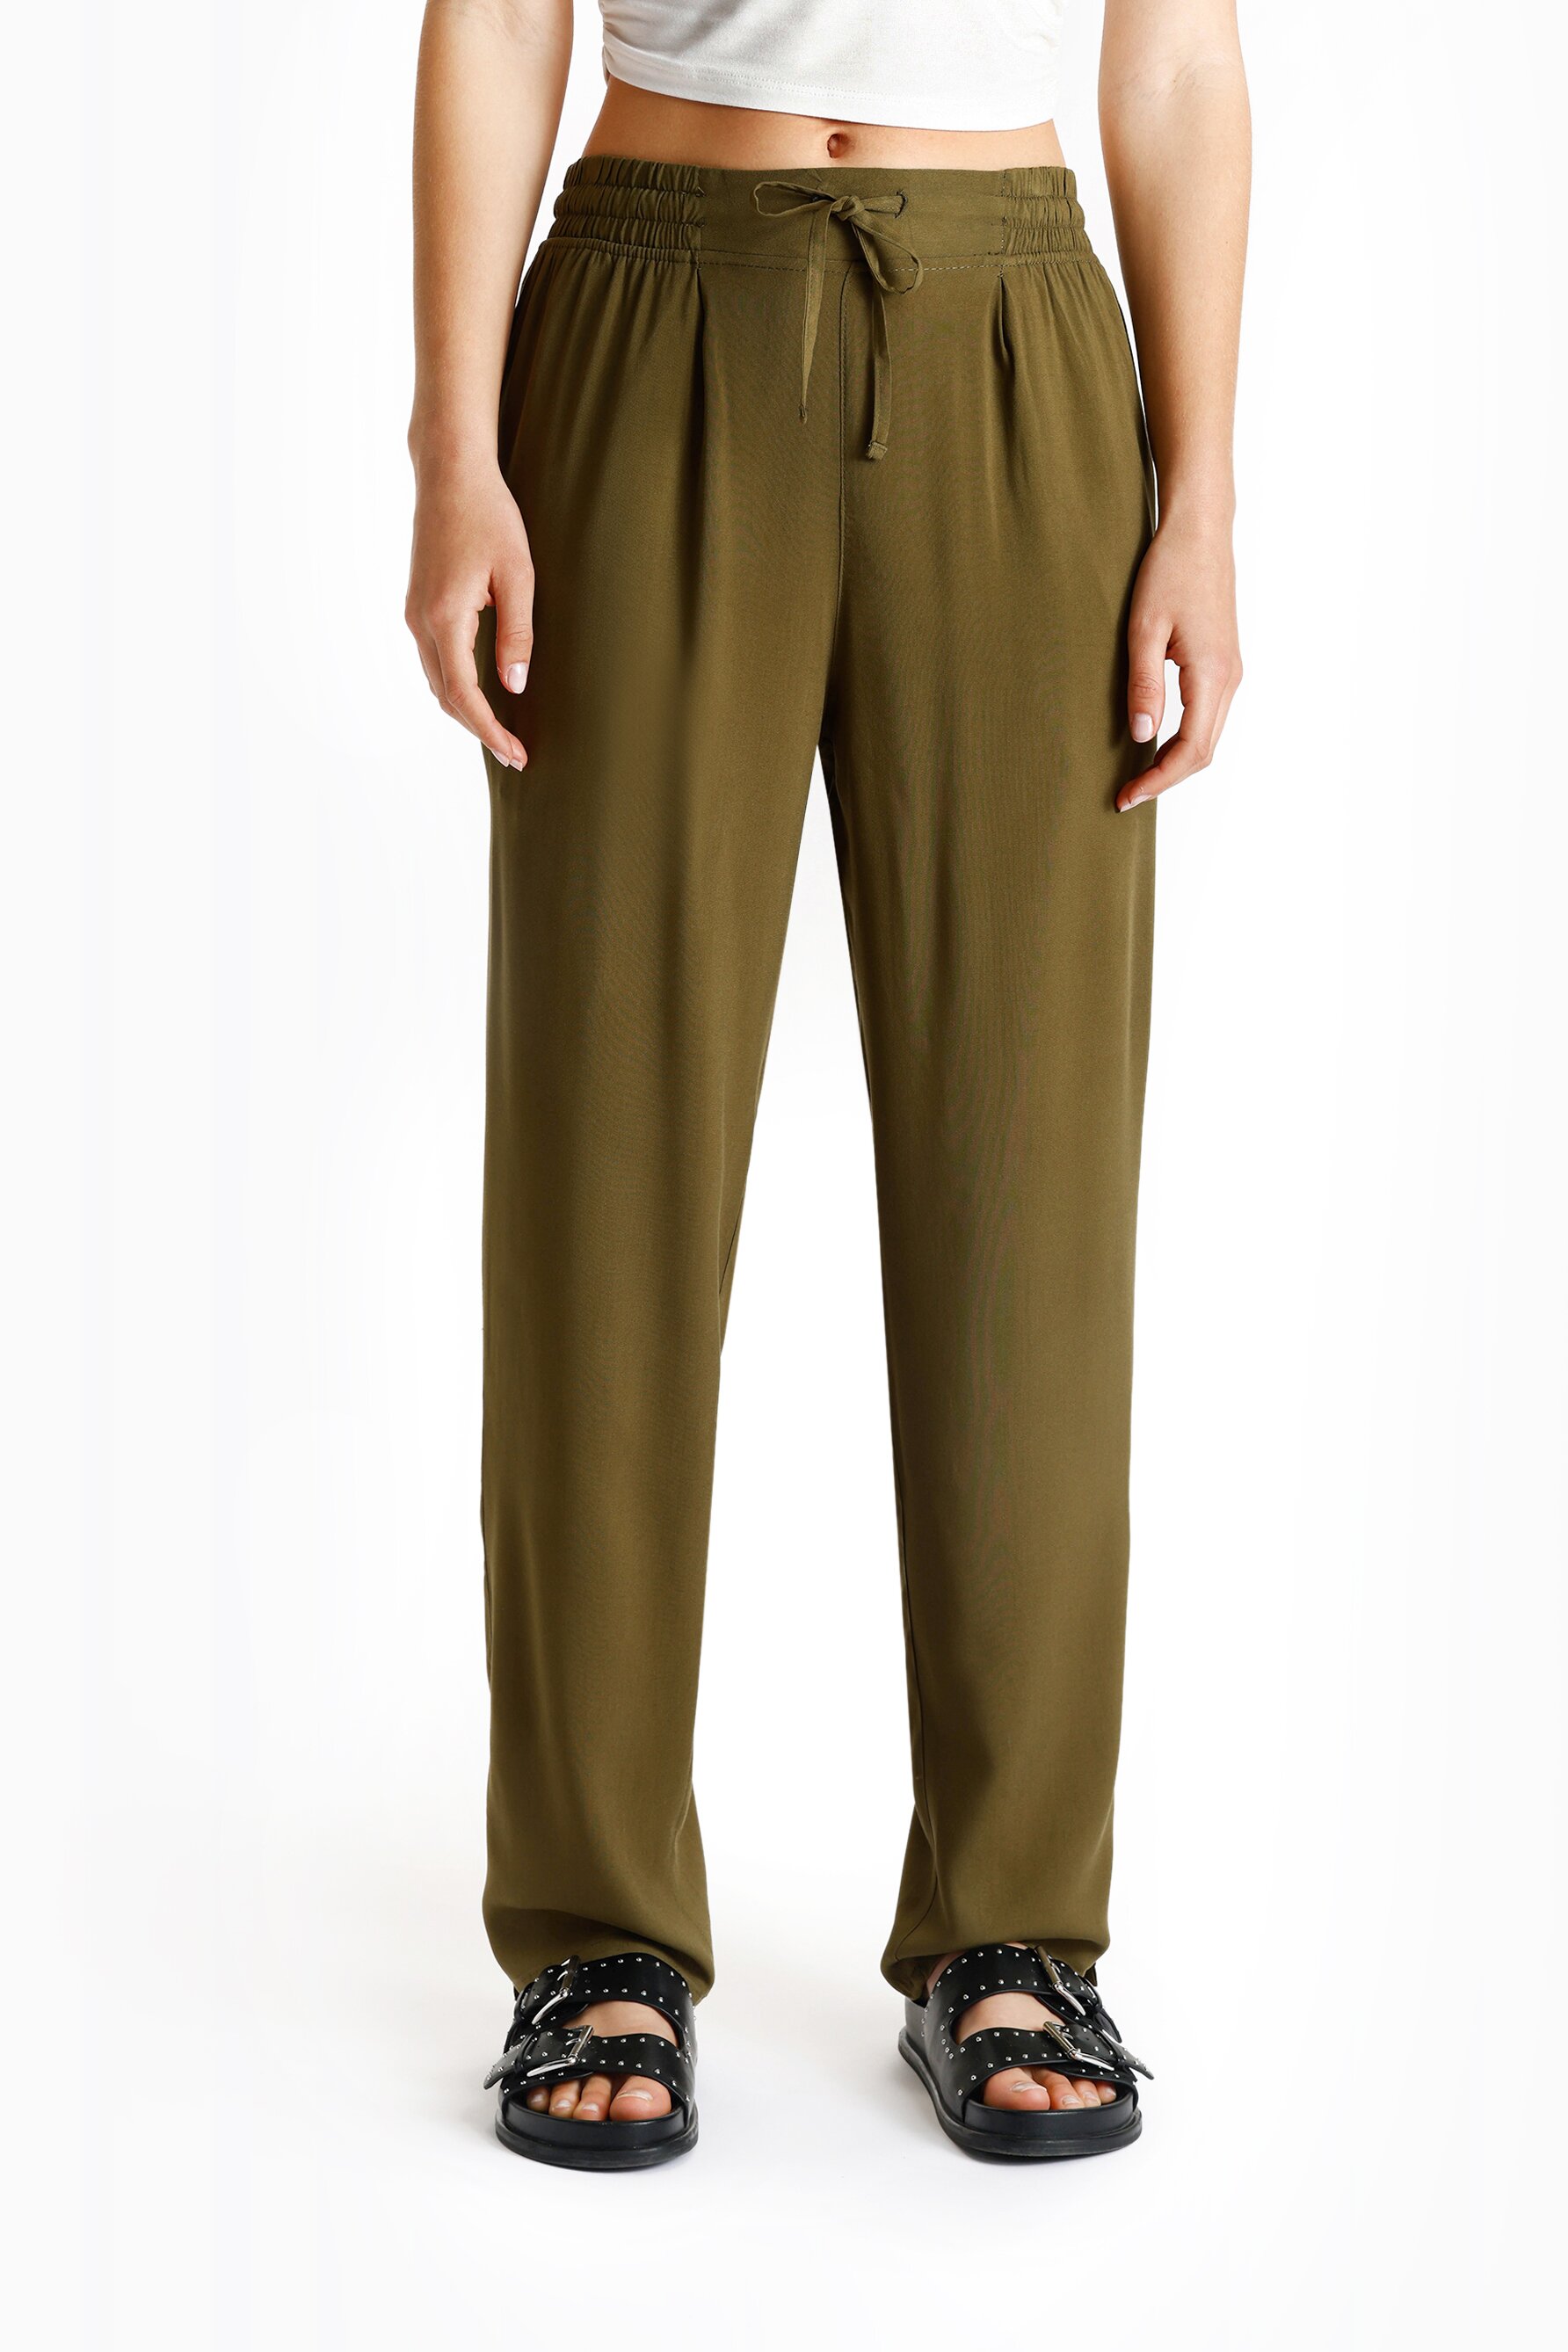 Pantalón fluido tipo pijama con cintura elástica y bolsillos laterales.